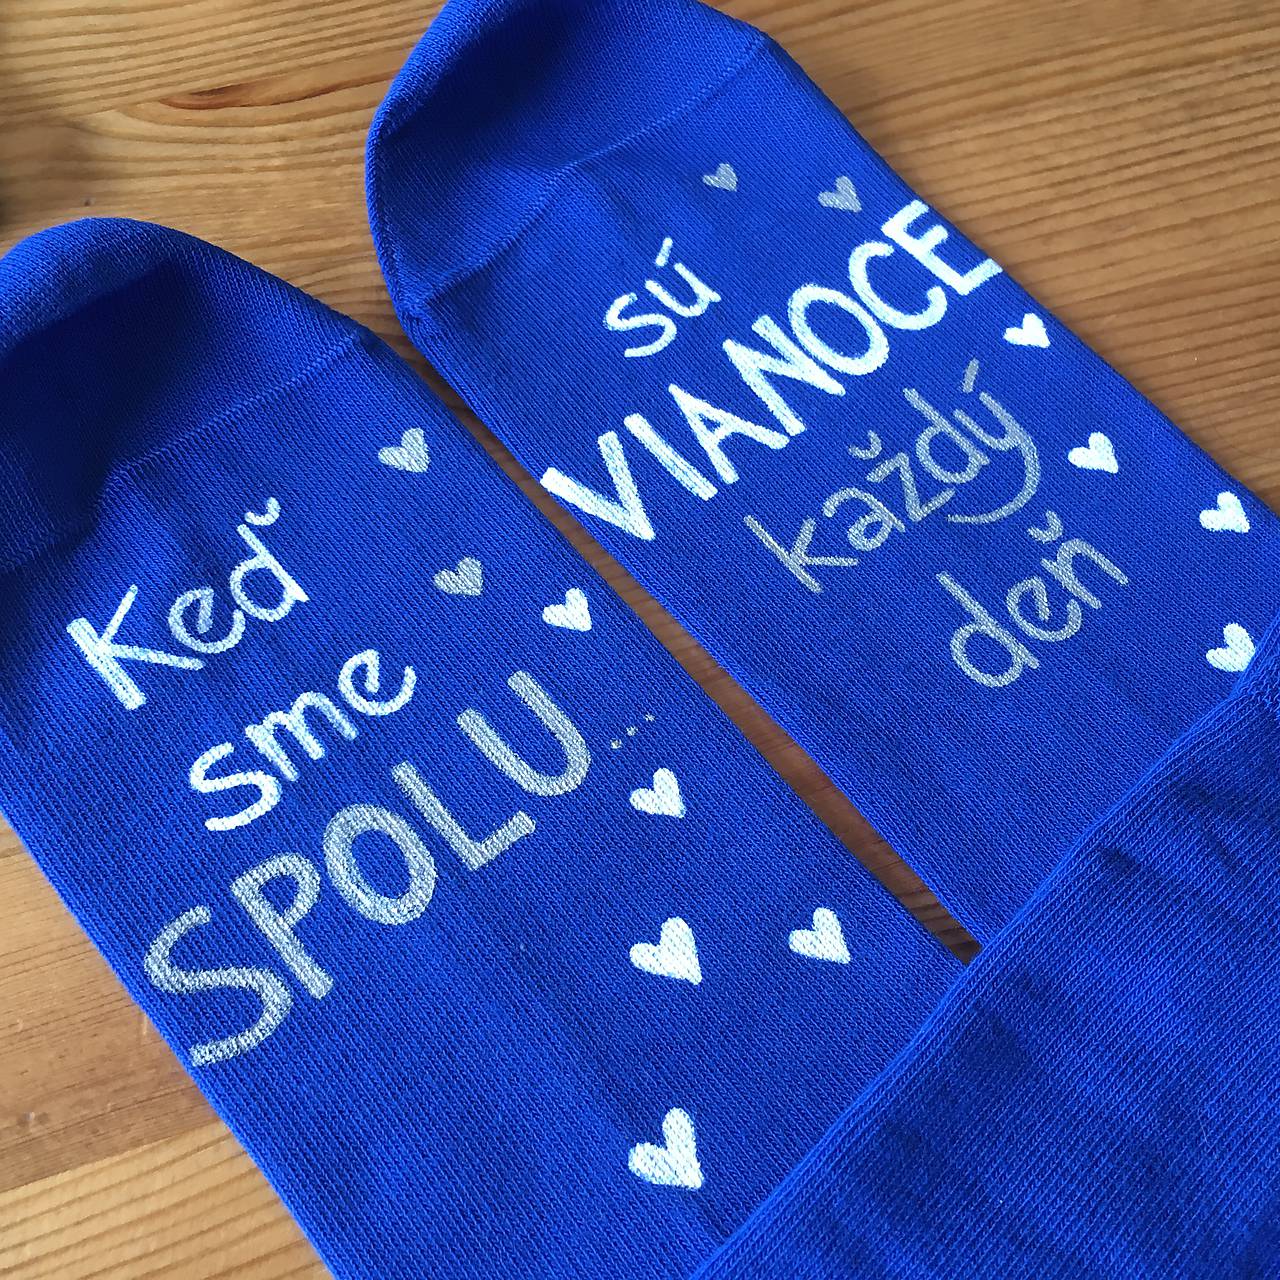 Maľované vianočné ponožky s nápisom: "Keď sme spolu, sú VIANOCE každý deň"  (kráľovsky modré)